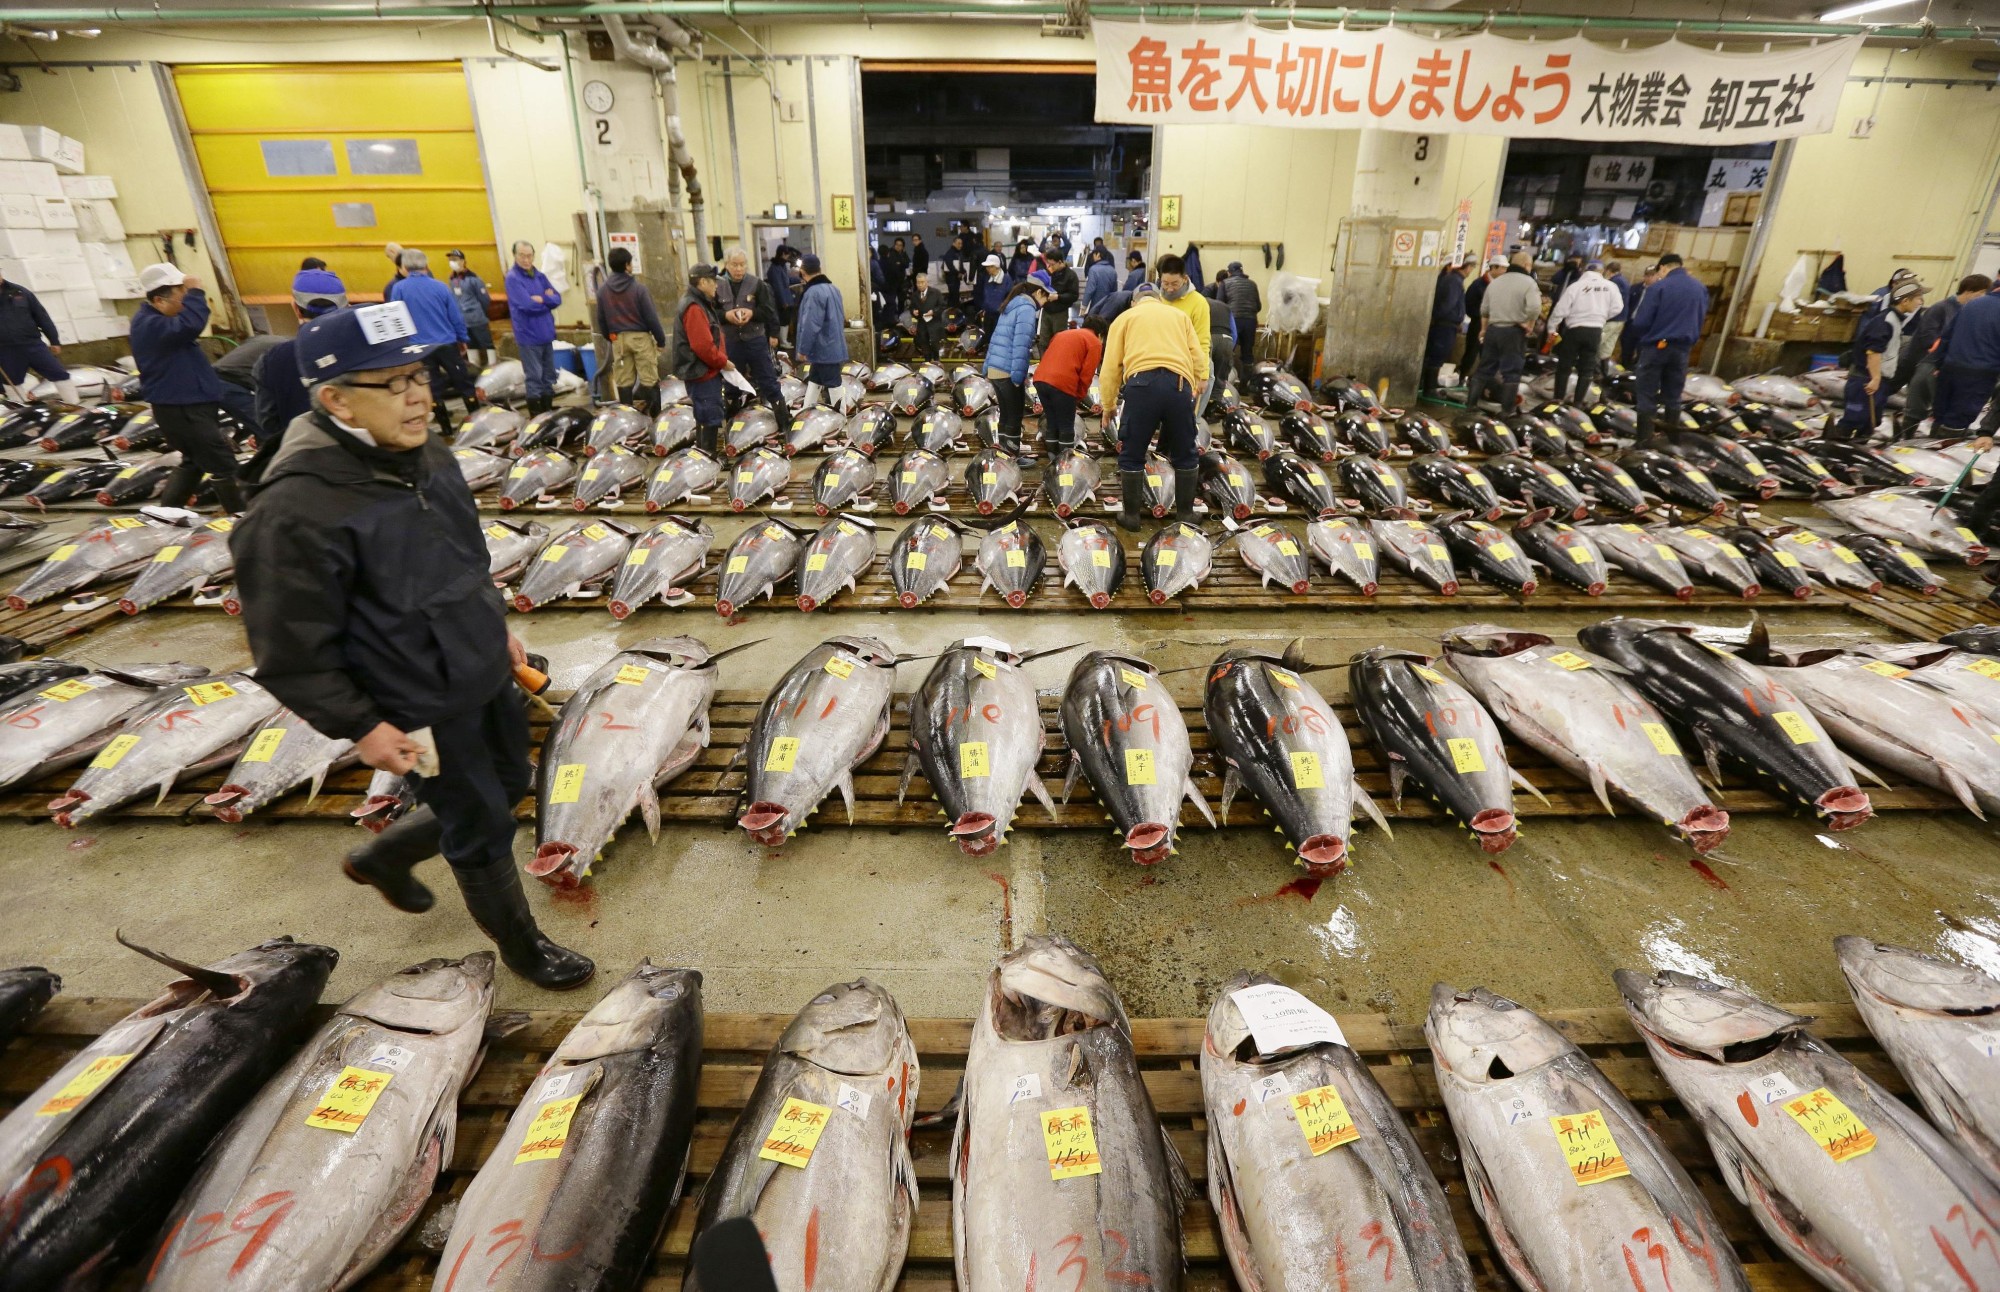 Quy mô “khủng” của chợ cá Tsukiji